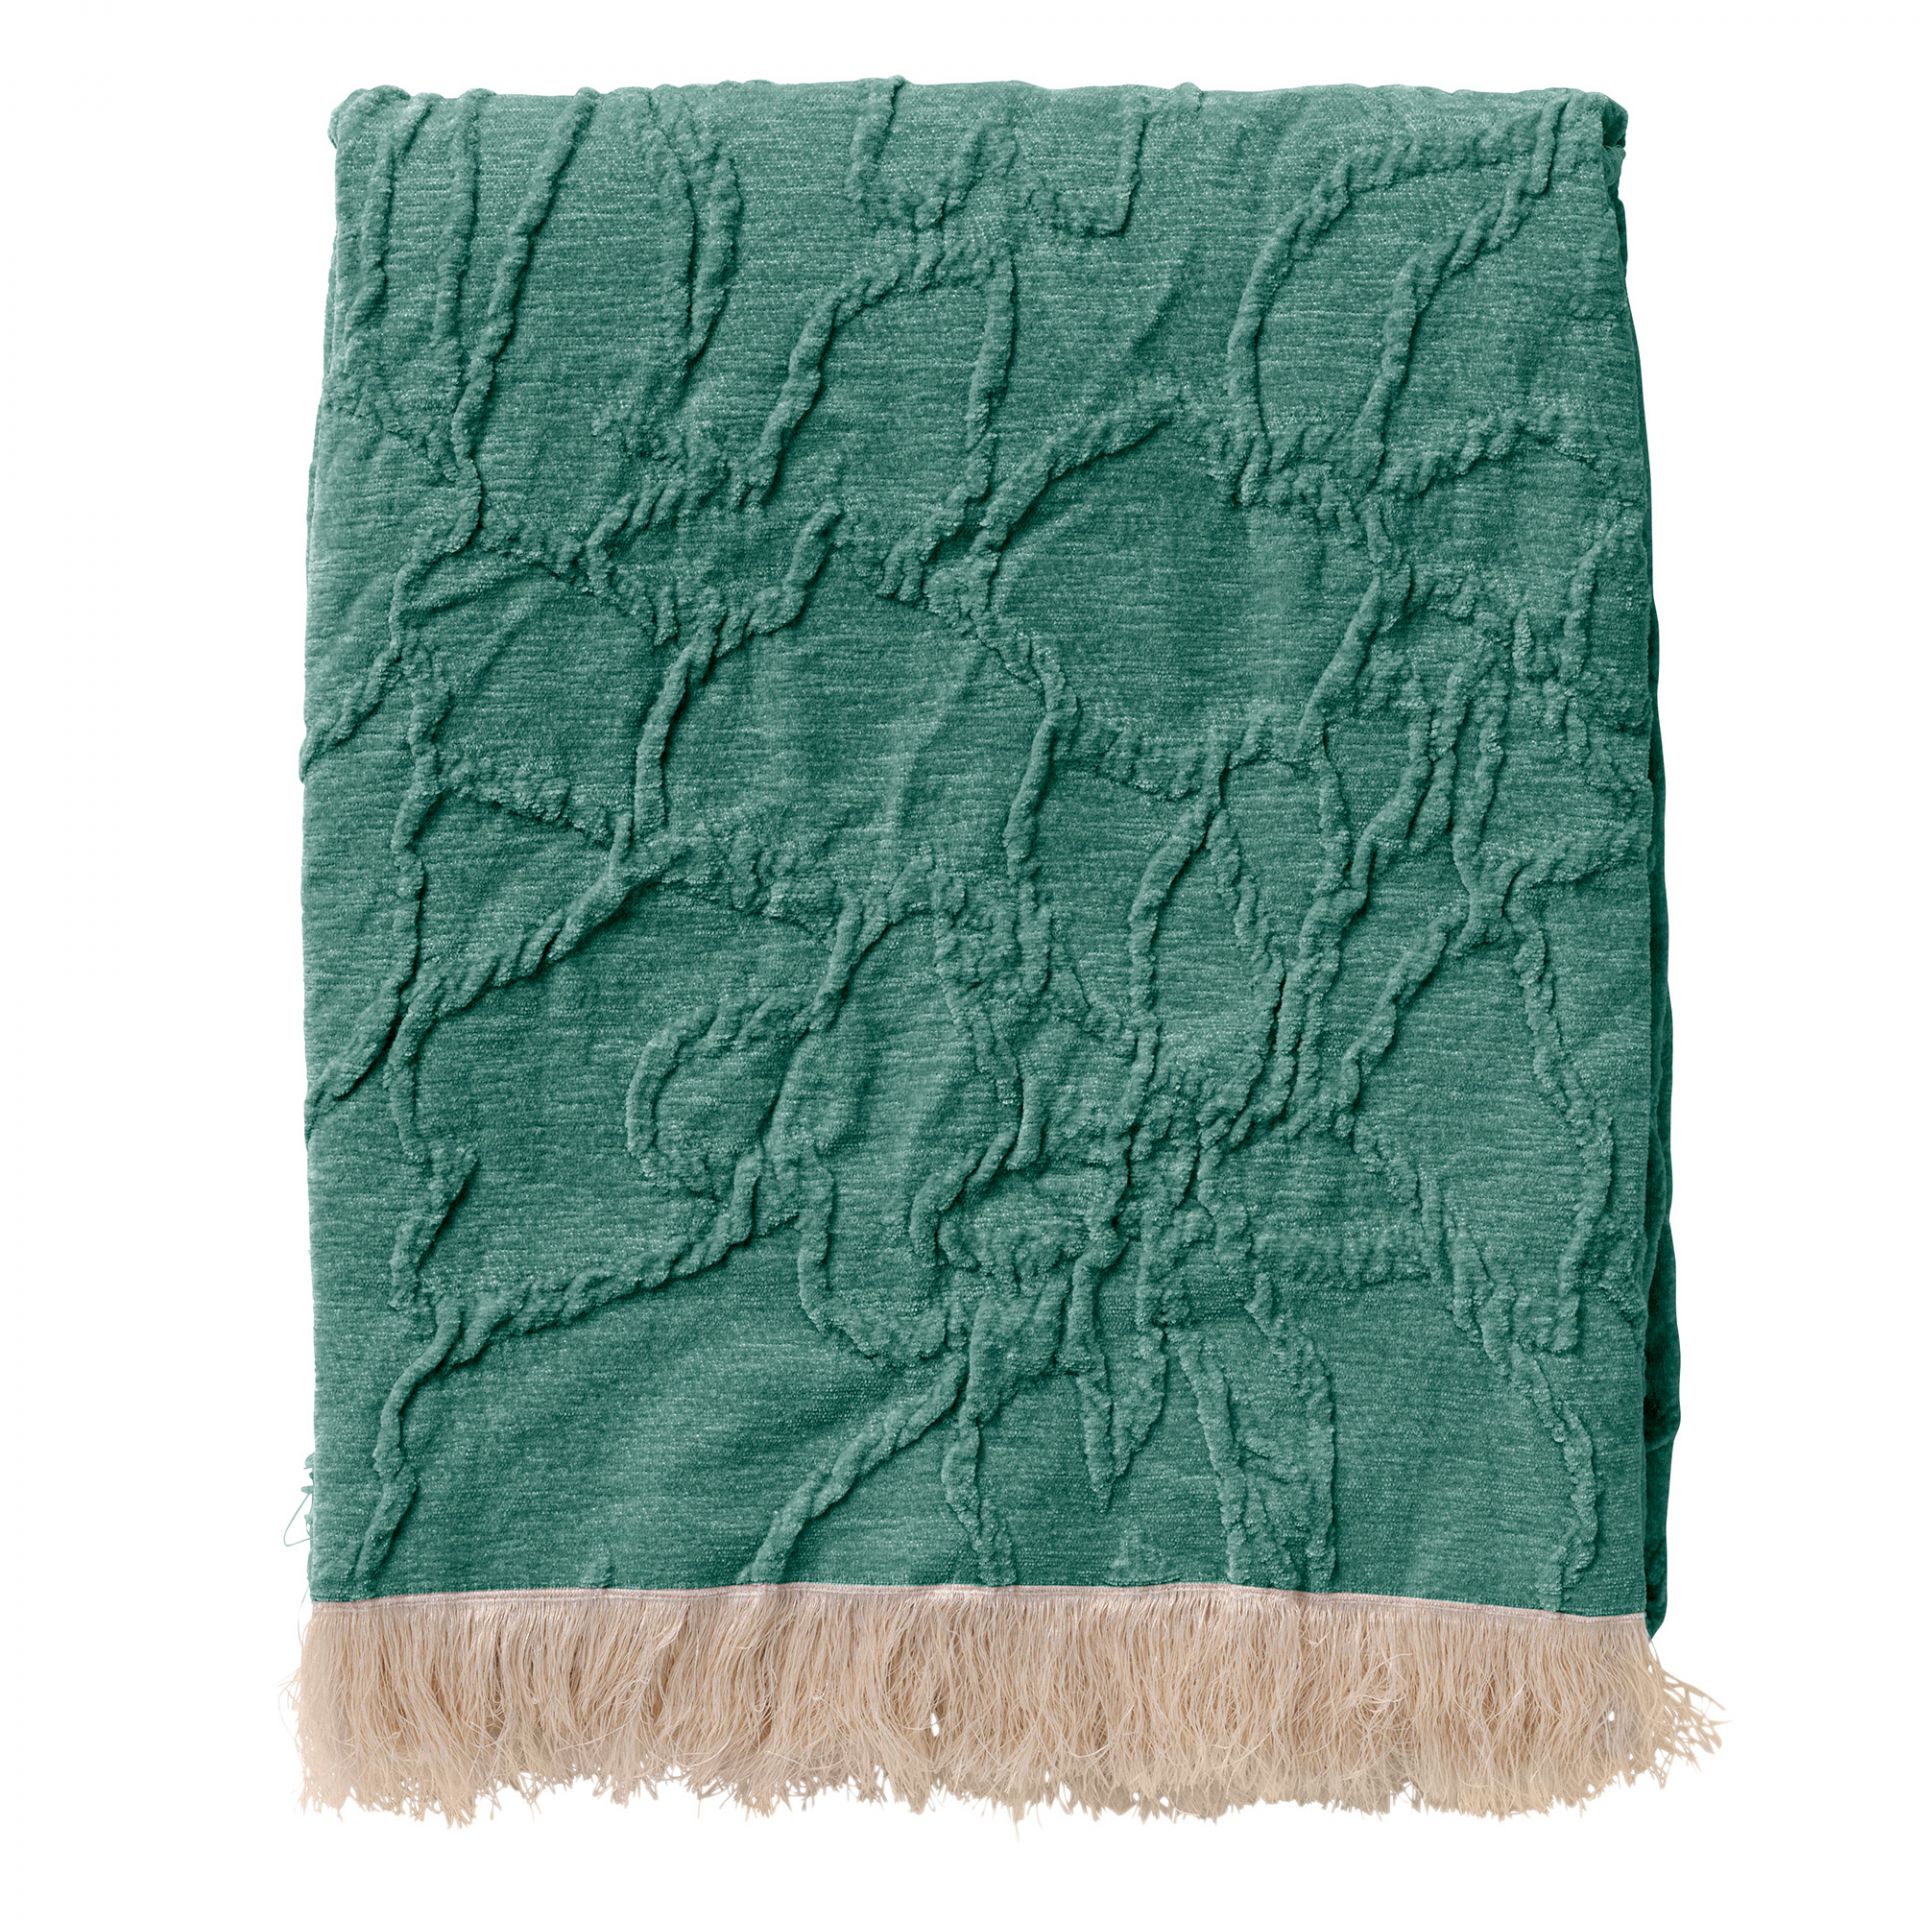 FLORINE - Plaid 140x180 cm - met ingeweven patroon - effen kleur met franjes - Sagebrush Green - groen